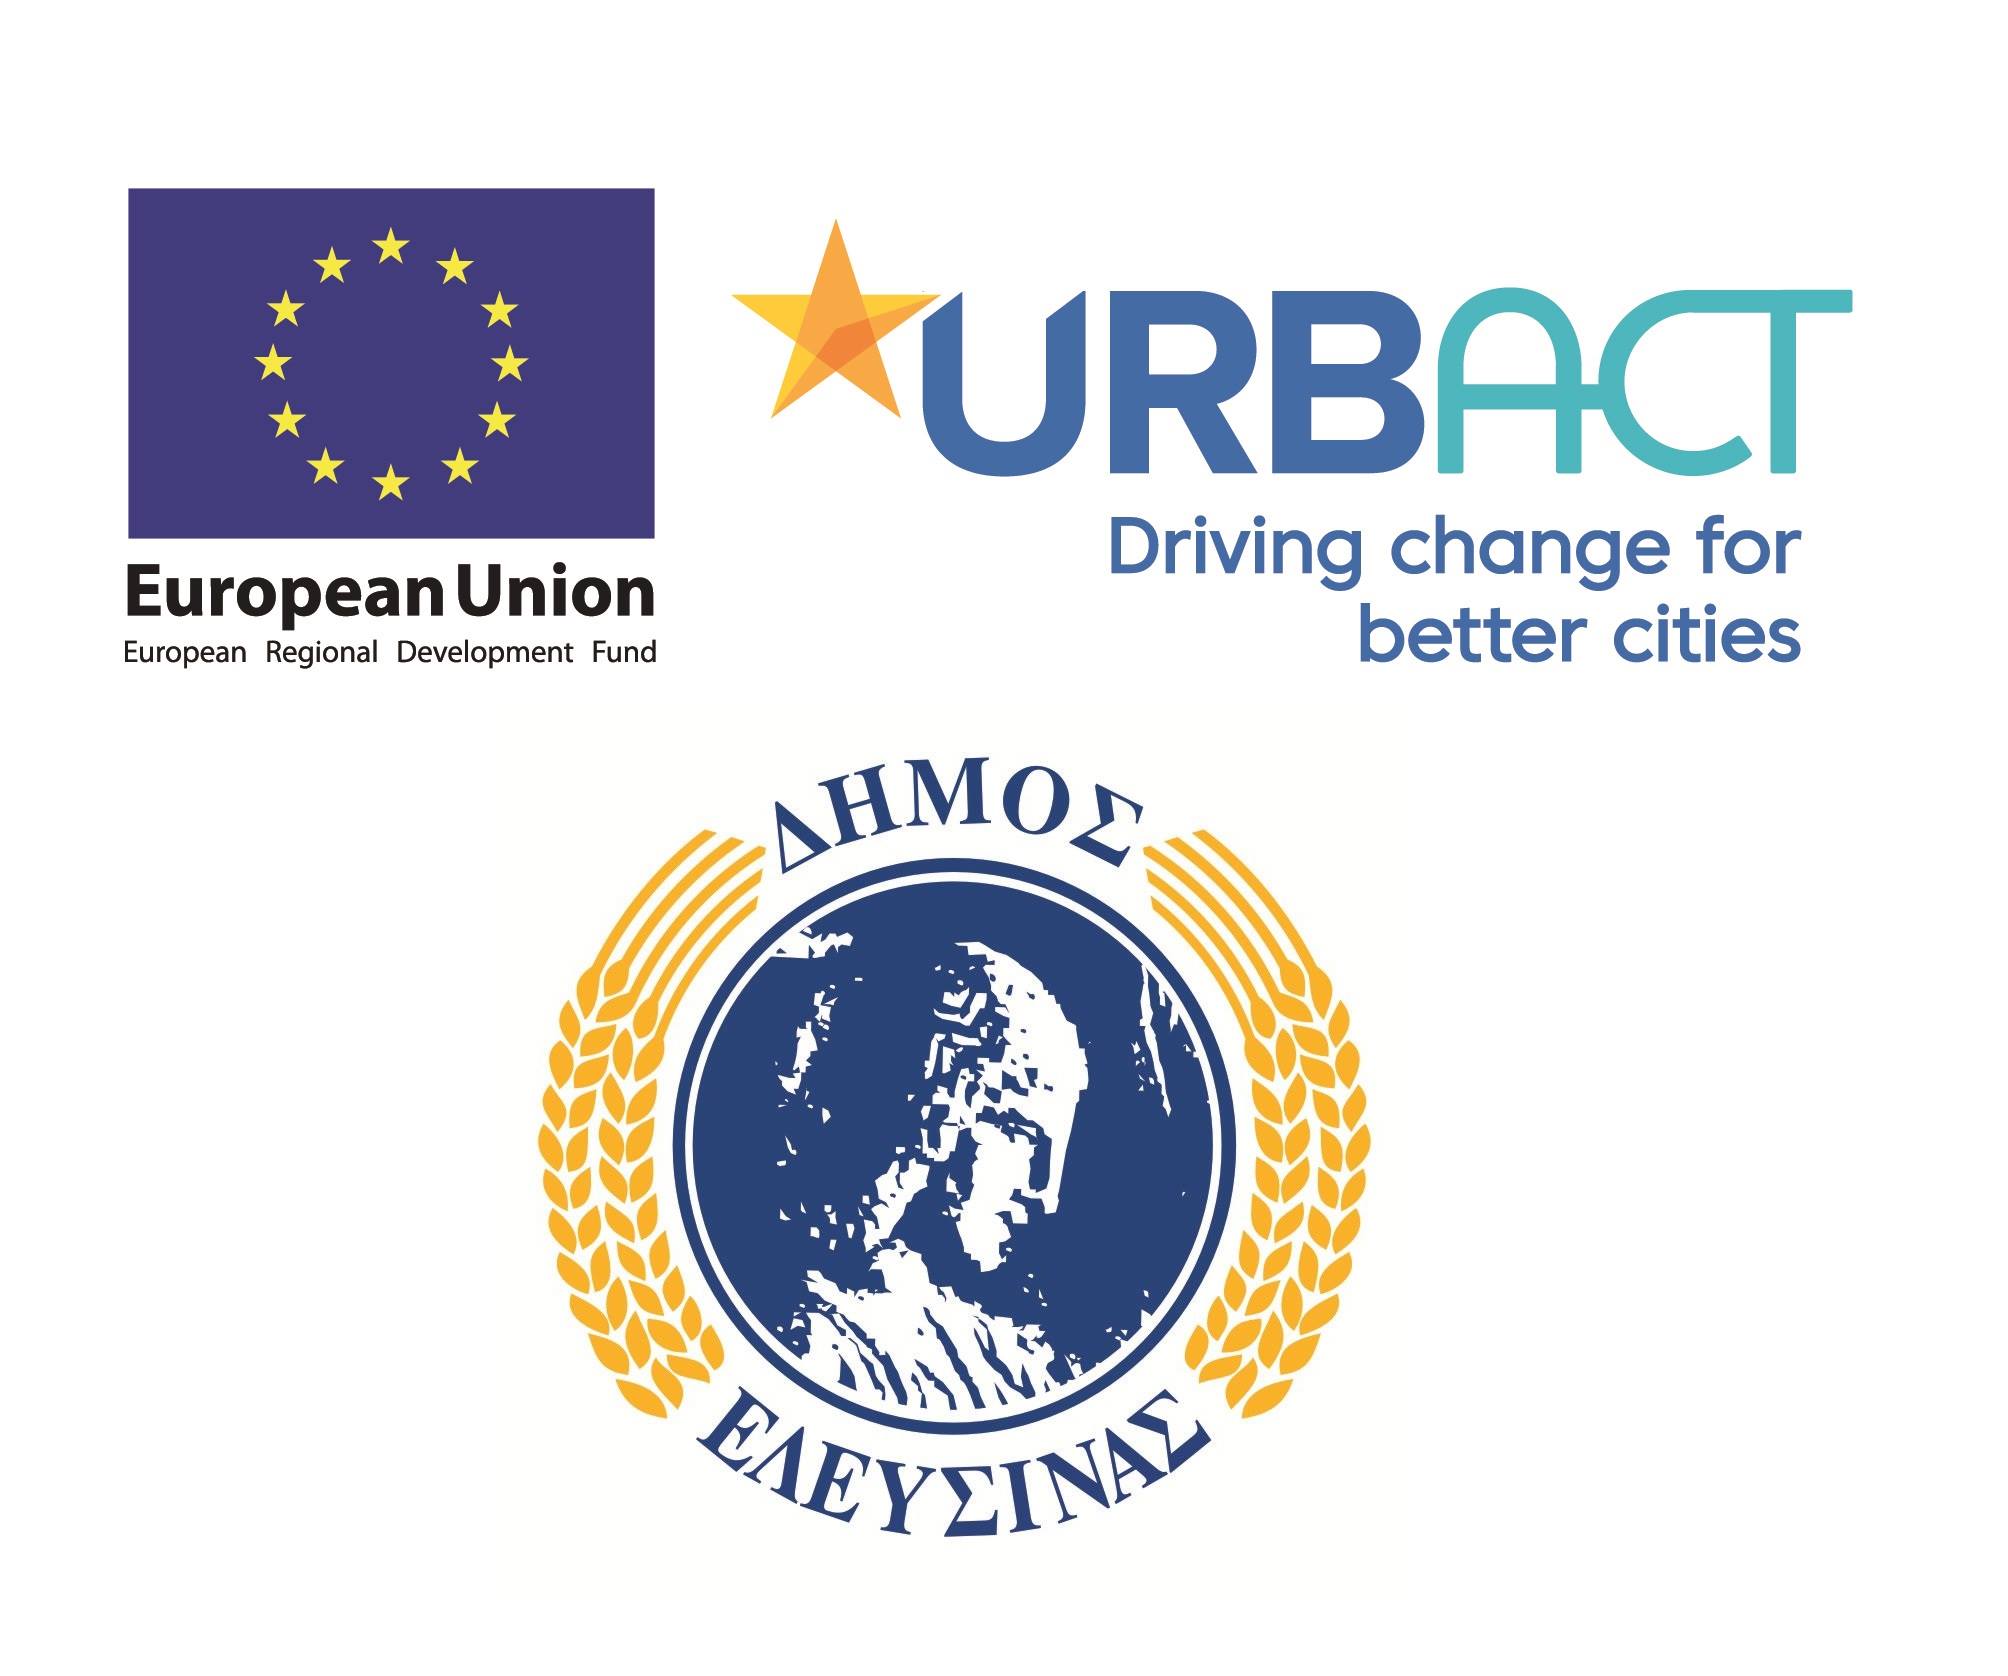 Έγκριση για την συμμετοχή του Δήμου Ελευσίνας  στο ευρωπαϊκό πρόγραμμα δημιουργίας δικτύων πόλεων URBACT με τίτλο "Urban Energy Pact"